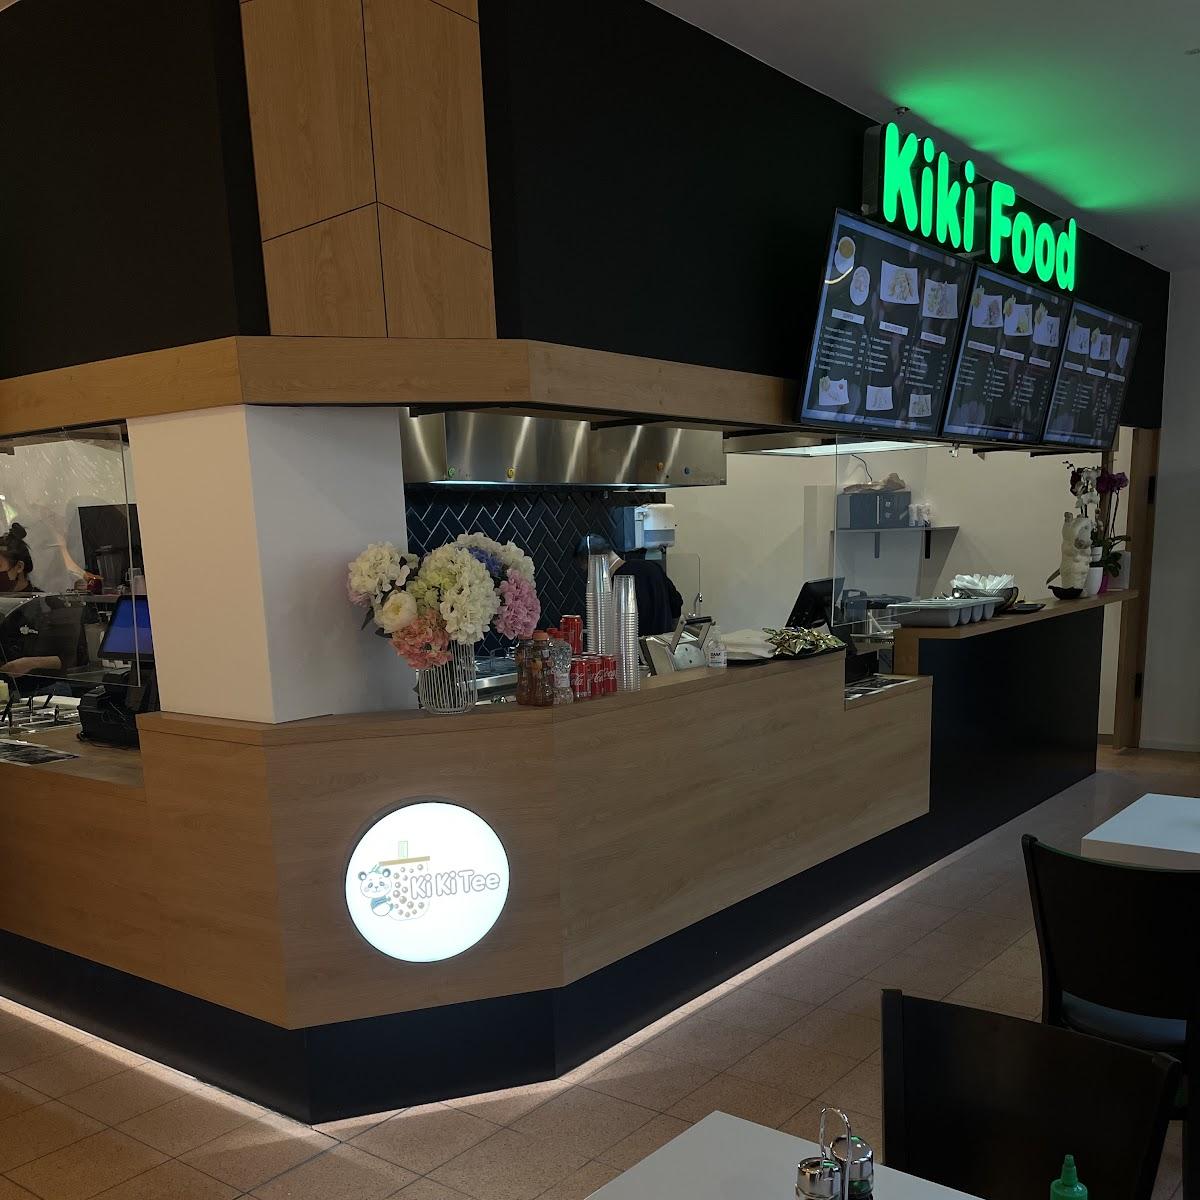 Restaurant "Kiki Food" in Stralsund